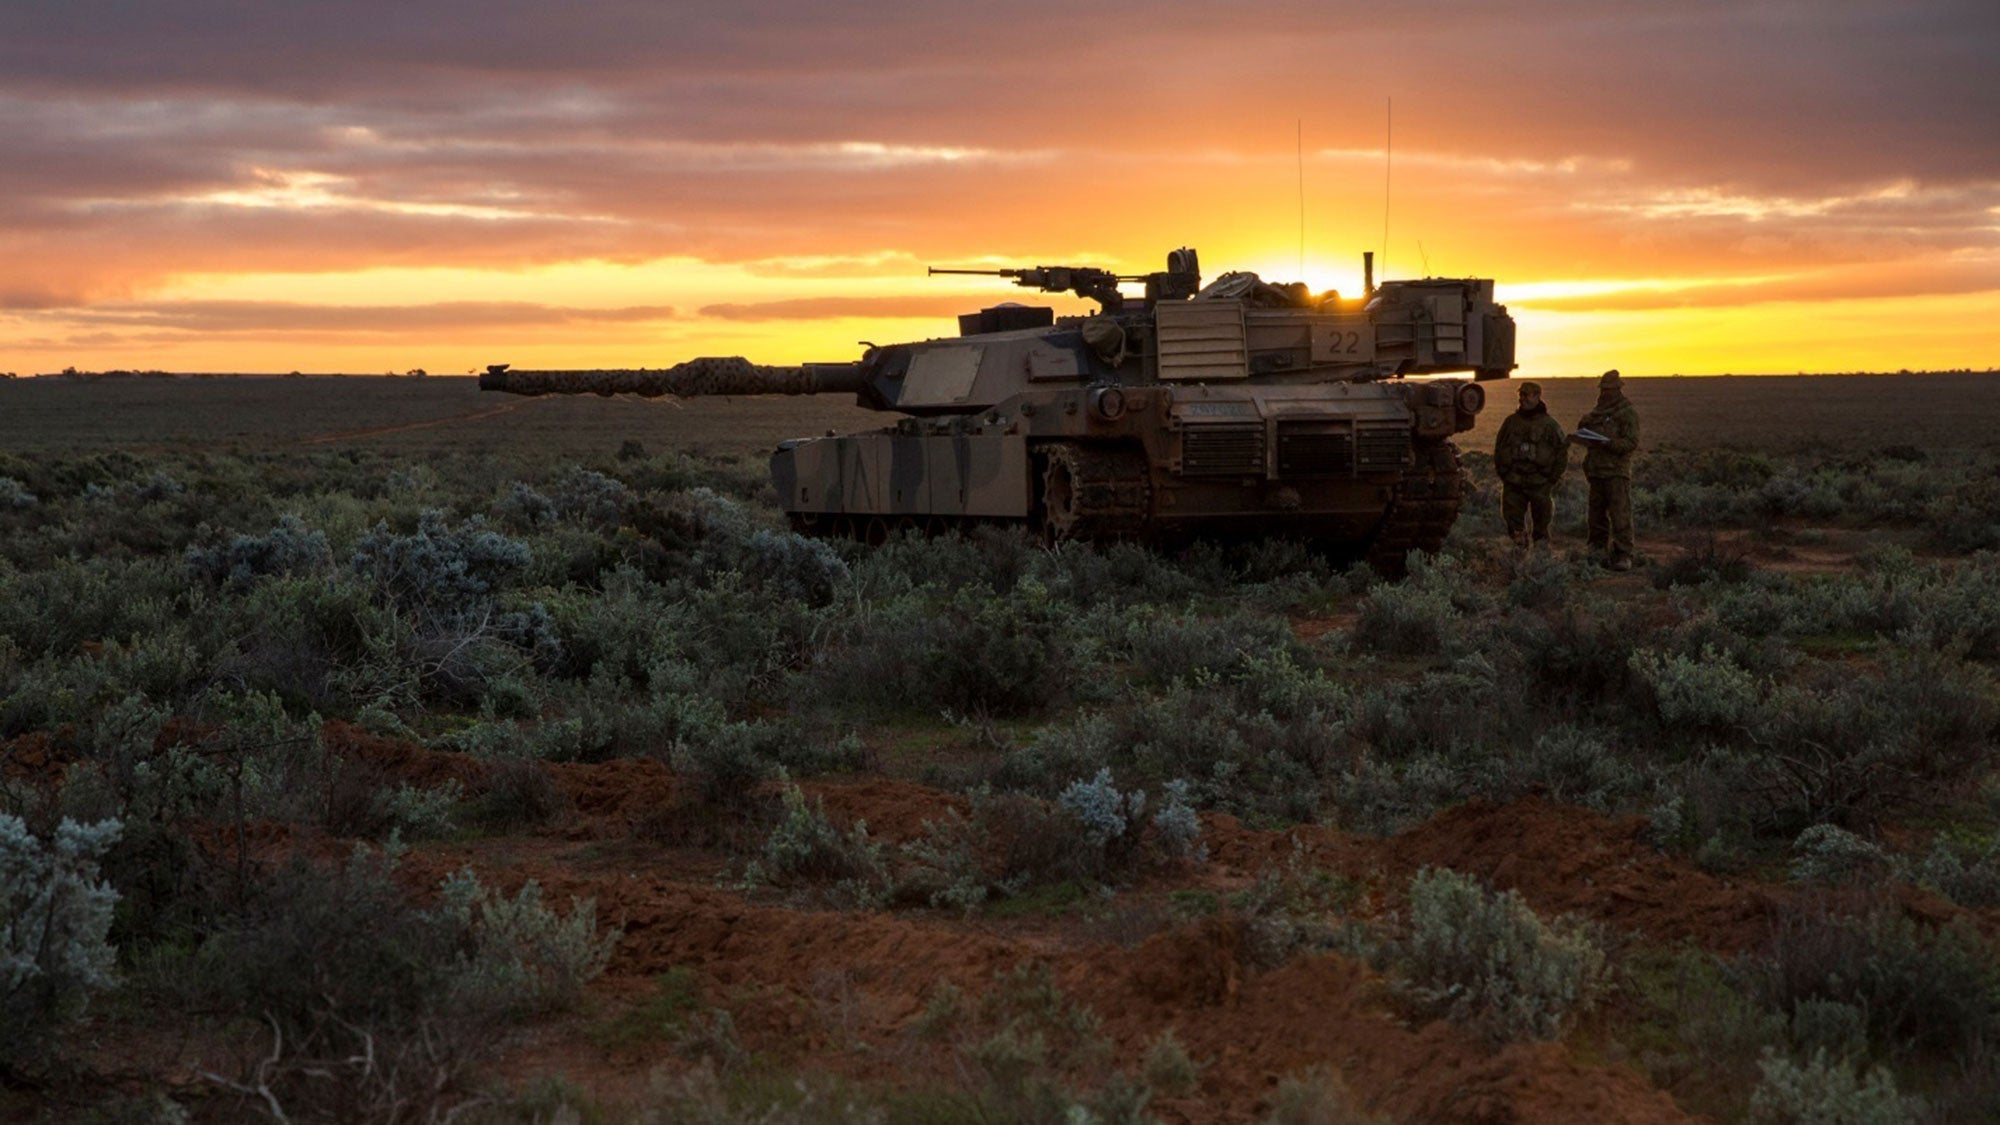 Australia wants a laser weapon powerful enough to stop a tank thumbnail